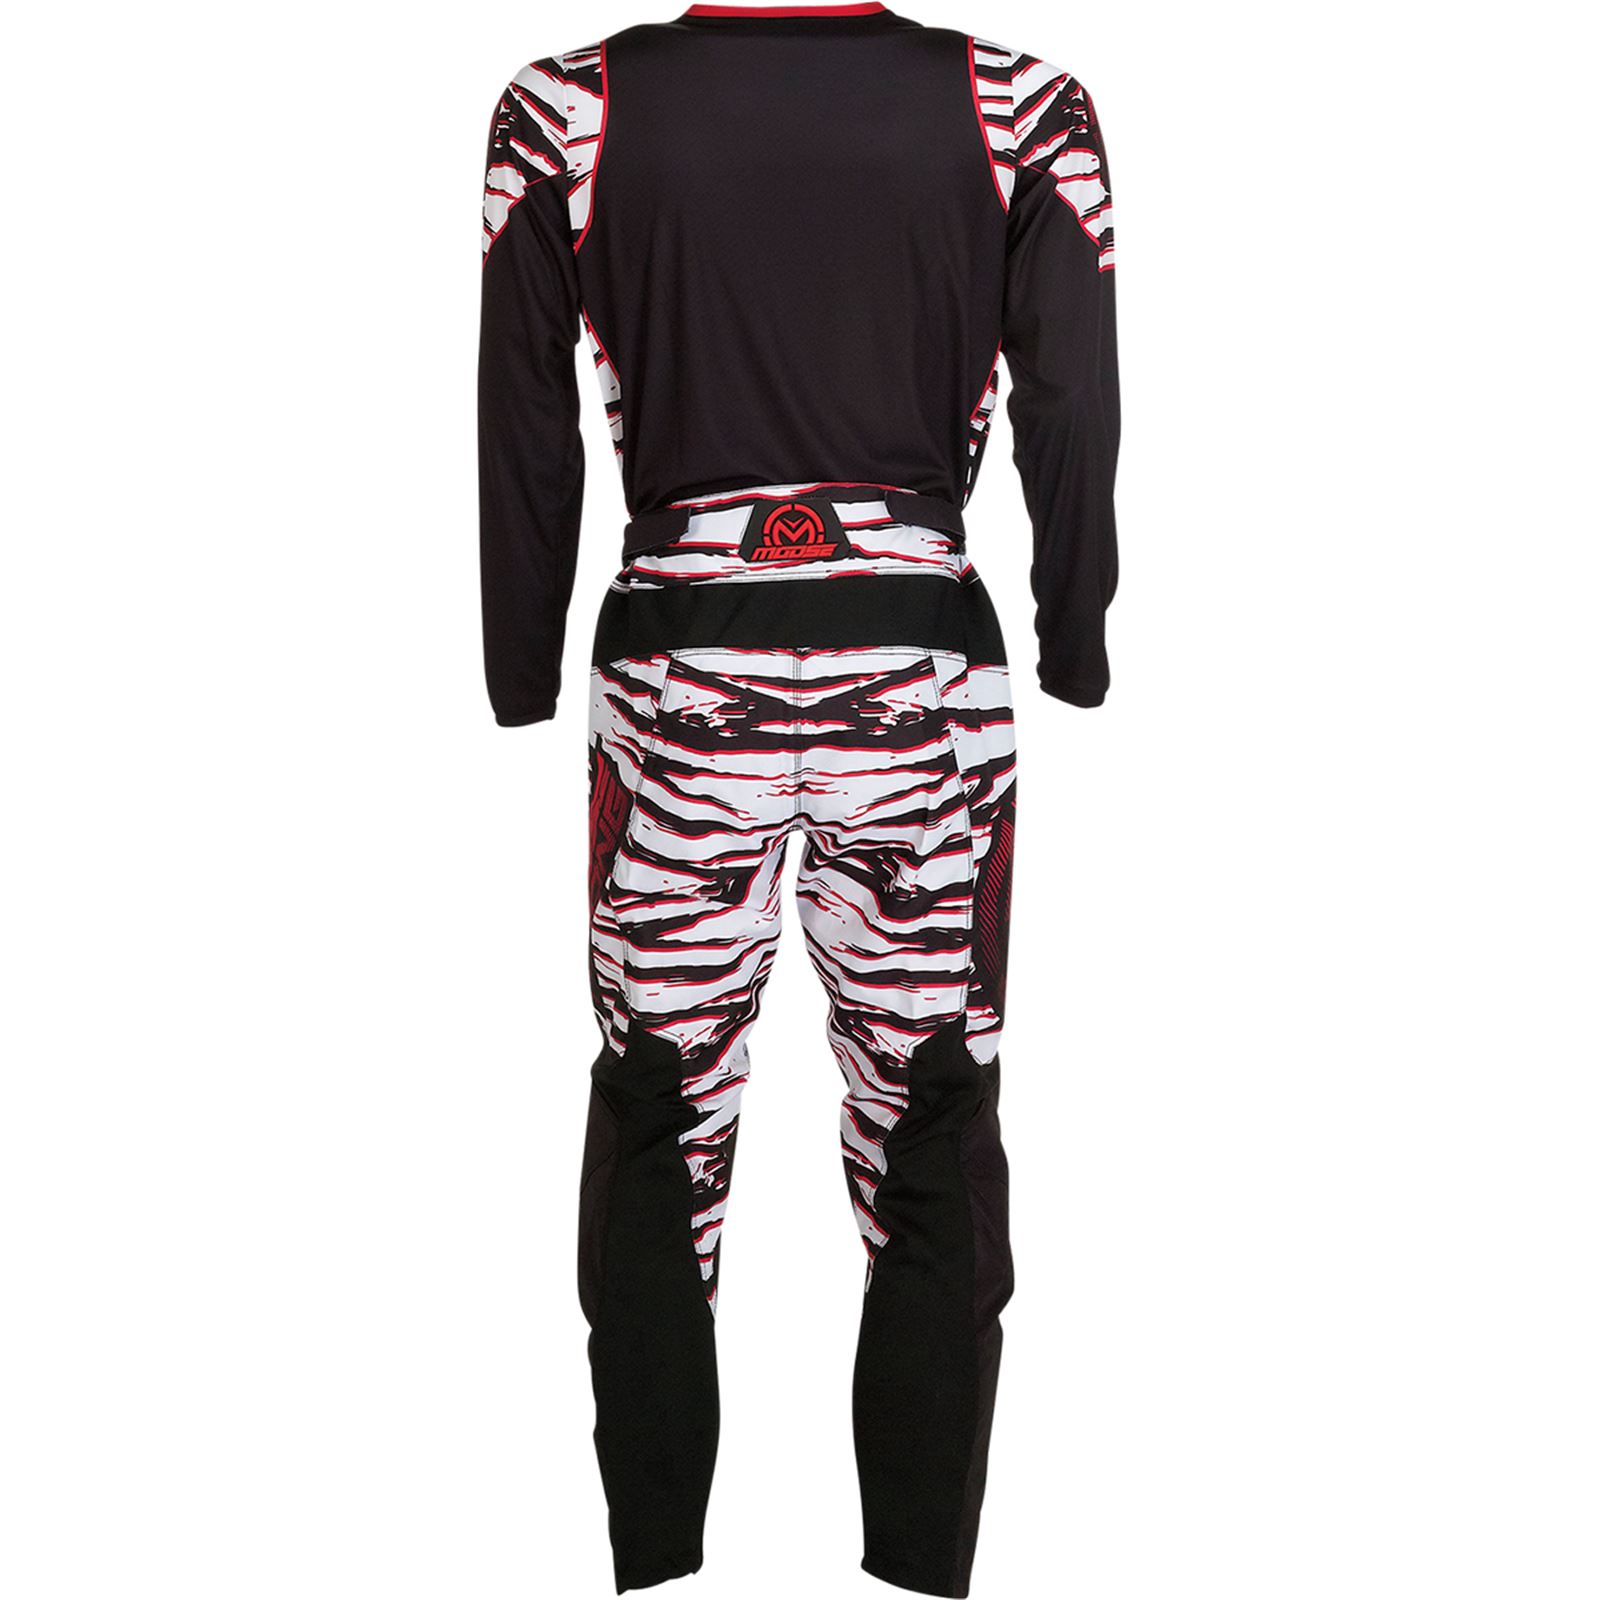 Moose Racing Qualifier Pants - Black/Red 